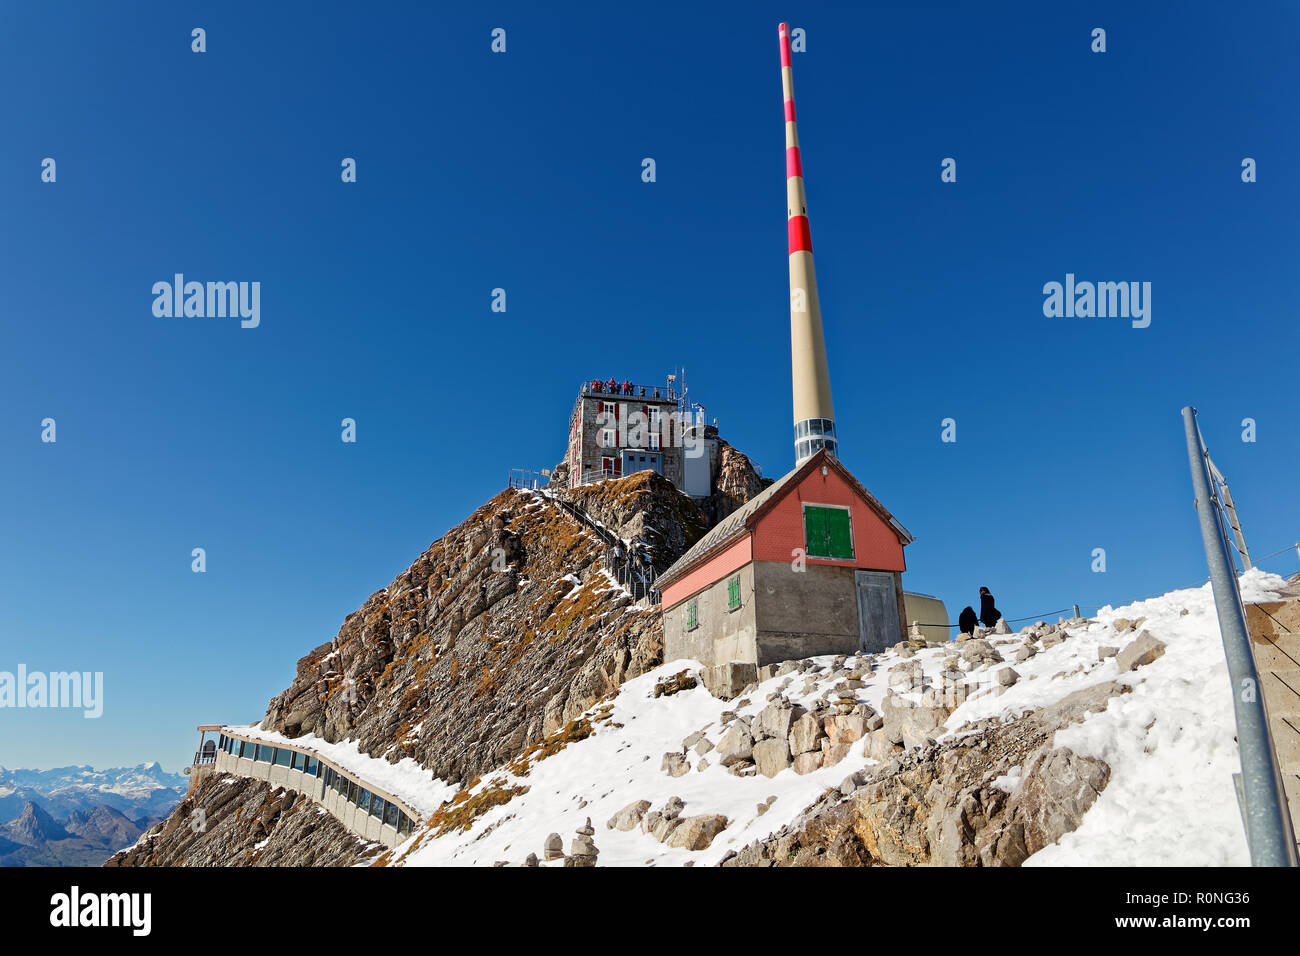 Sunny, first snow, views of Säntis summit in Alpstein, Appenzell Alps, Switzerland Stock Photo